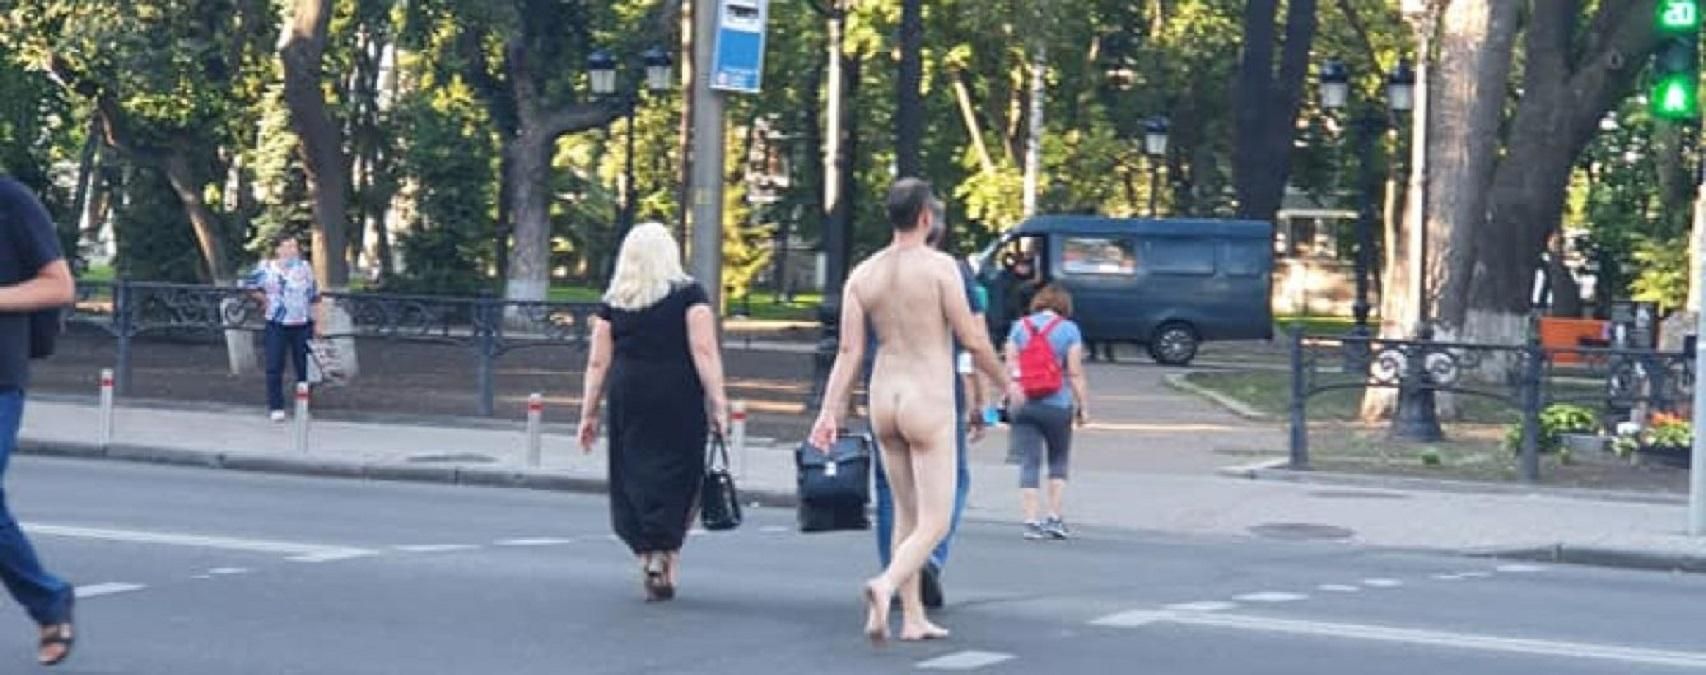 Києвом знову розгулював голий чоловік: фото 18+